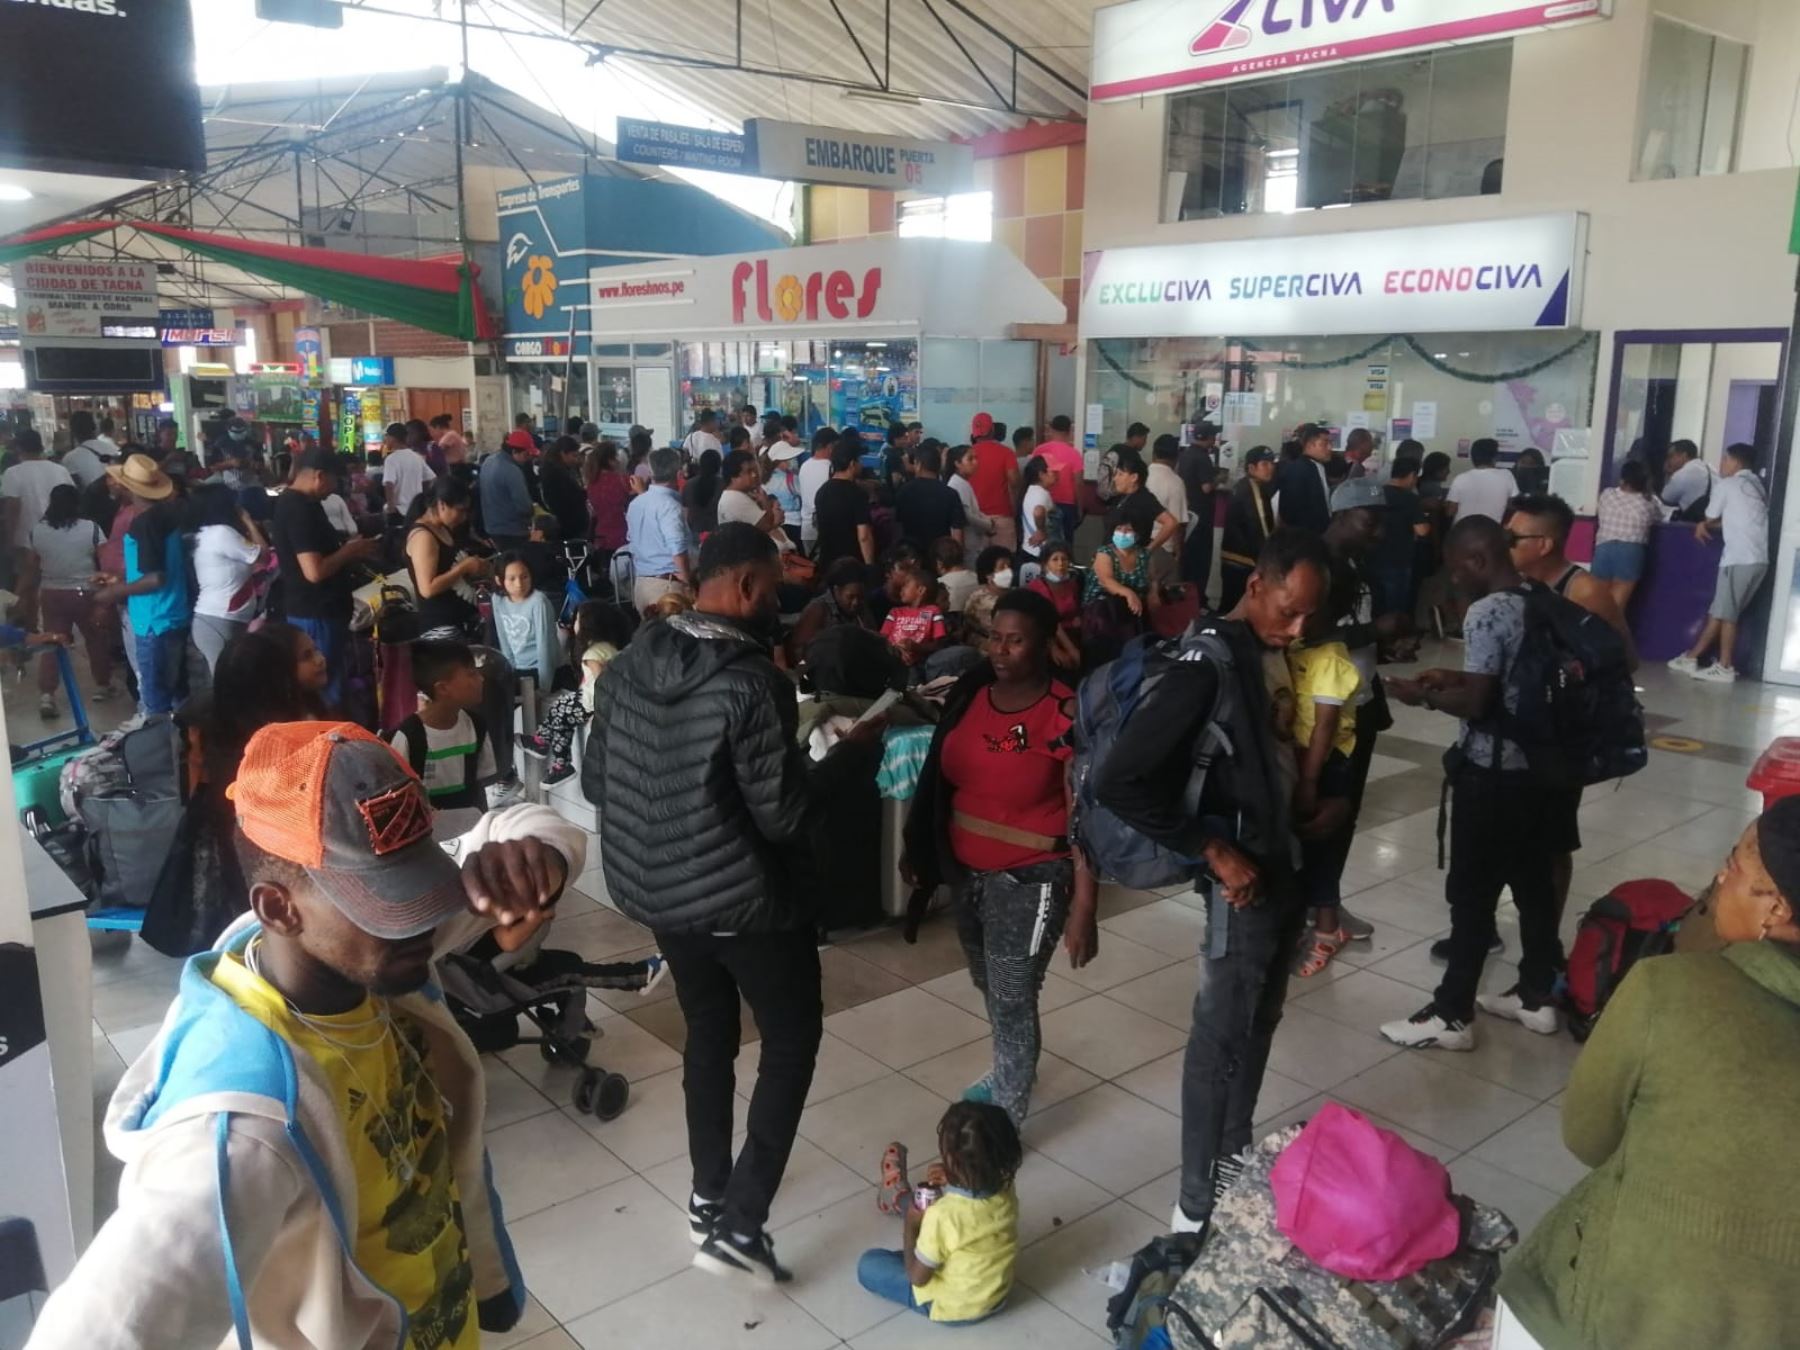 Más de 1,500 turistas nacionales y extranjeros se encuentran varados en el terminal terrestre de la ciudad de Tacna debido al bloqueo de carreteras. Foto: Yudith Aguilar